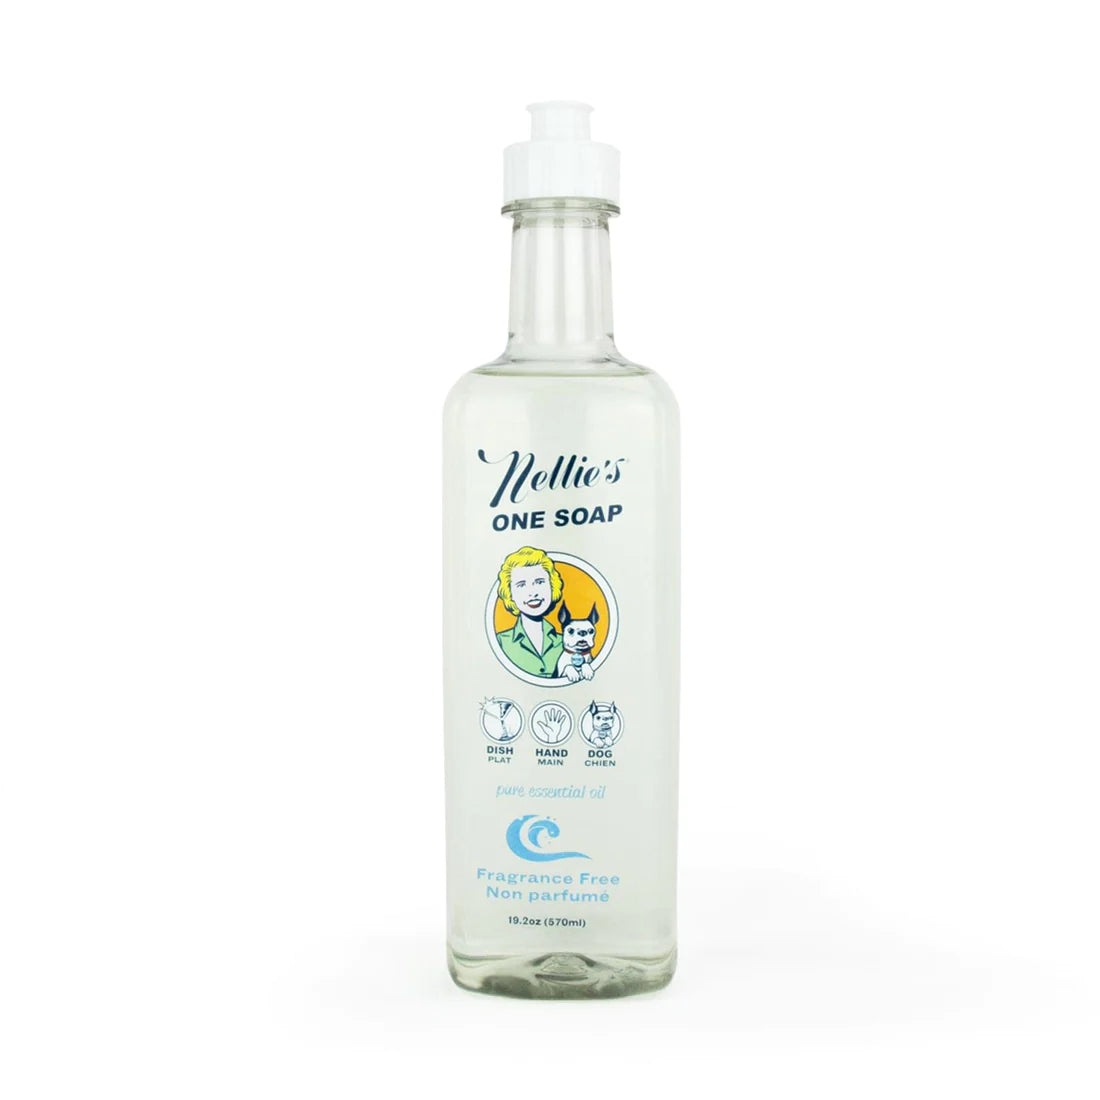 Nellie's - One Soap - Fragrance Free Multi-purpose Liquid Soap